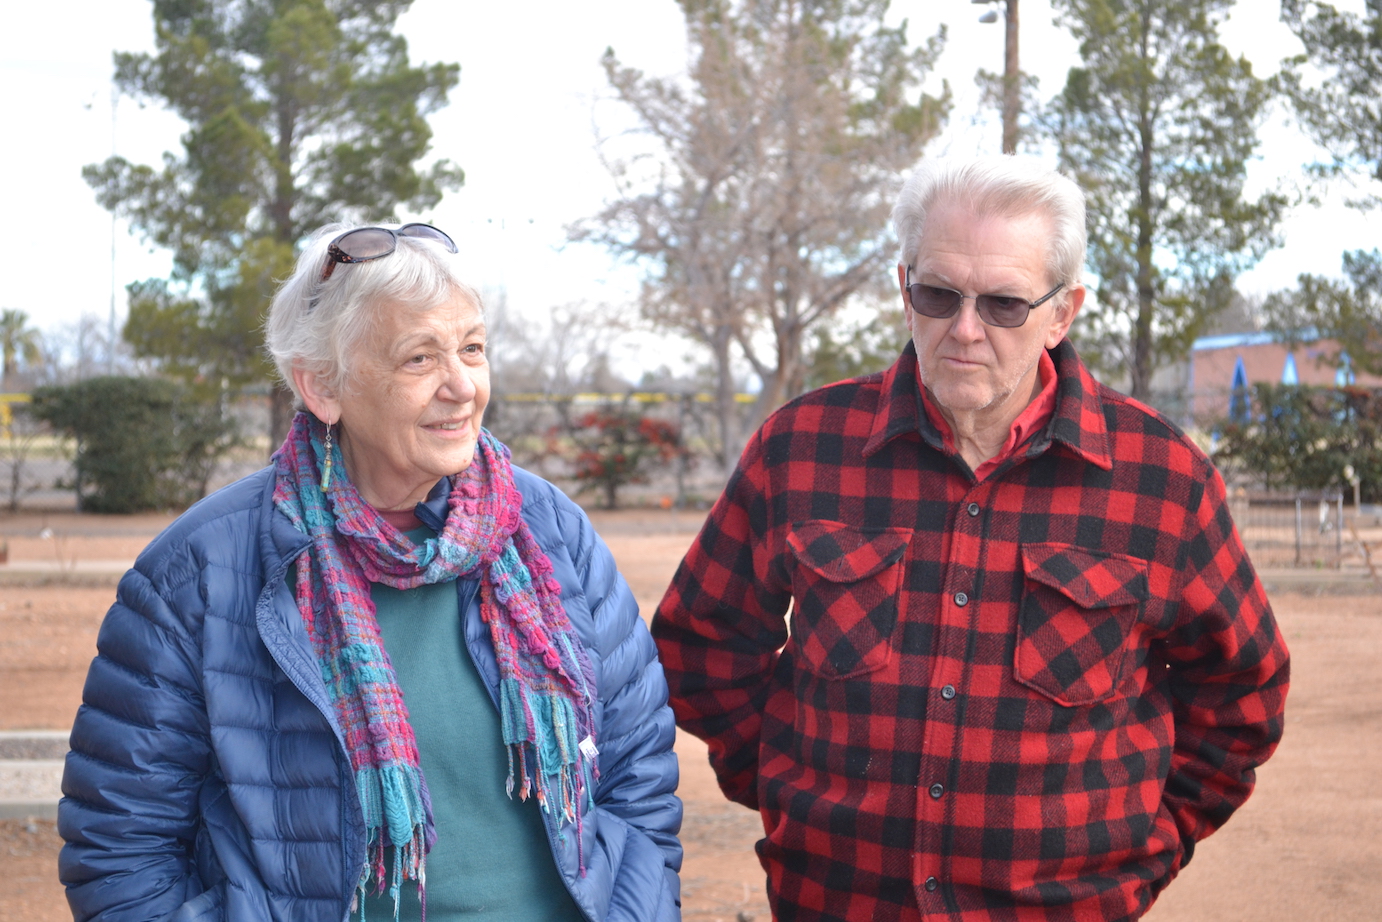 Linda and Jack, guides in Arizona